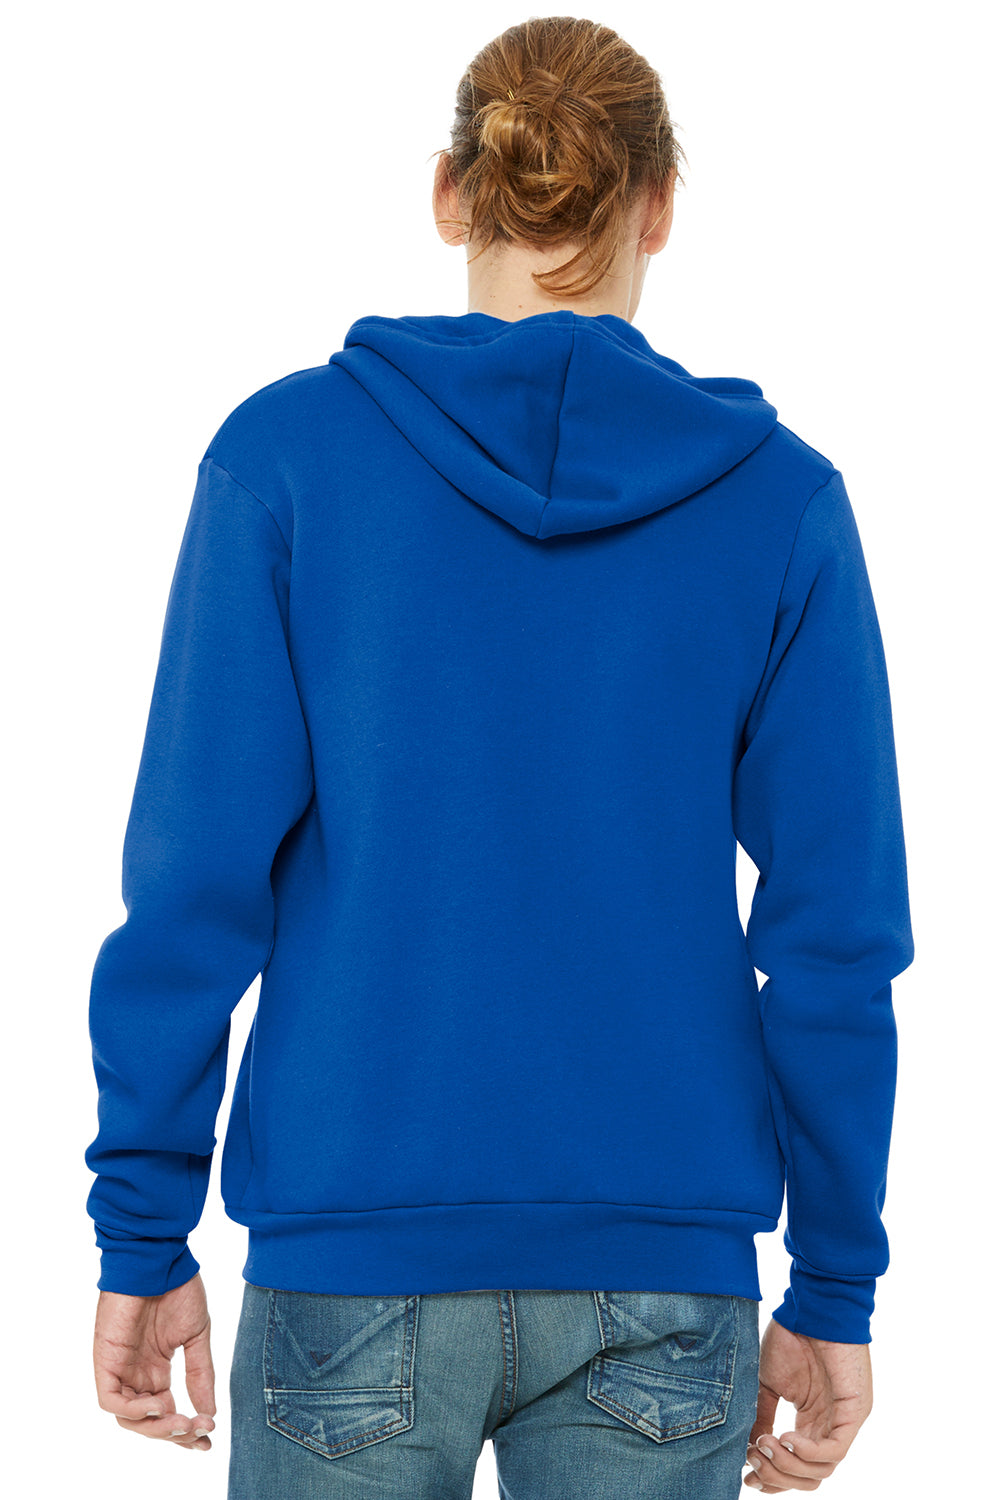 Bella + Canvas BC3739/3739 Mens Fleece Full Zip Hooded Sweatshirt Hoodie True Royal Blue Model Back